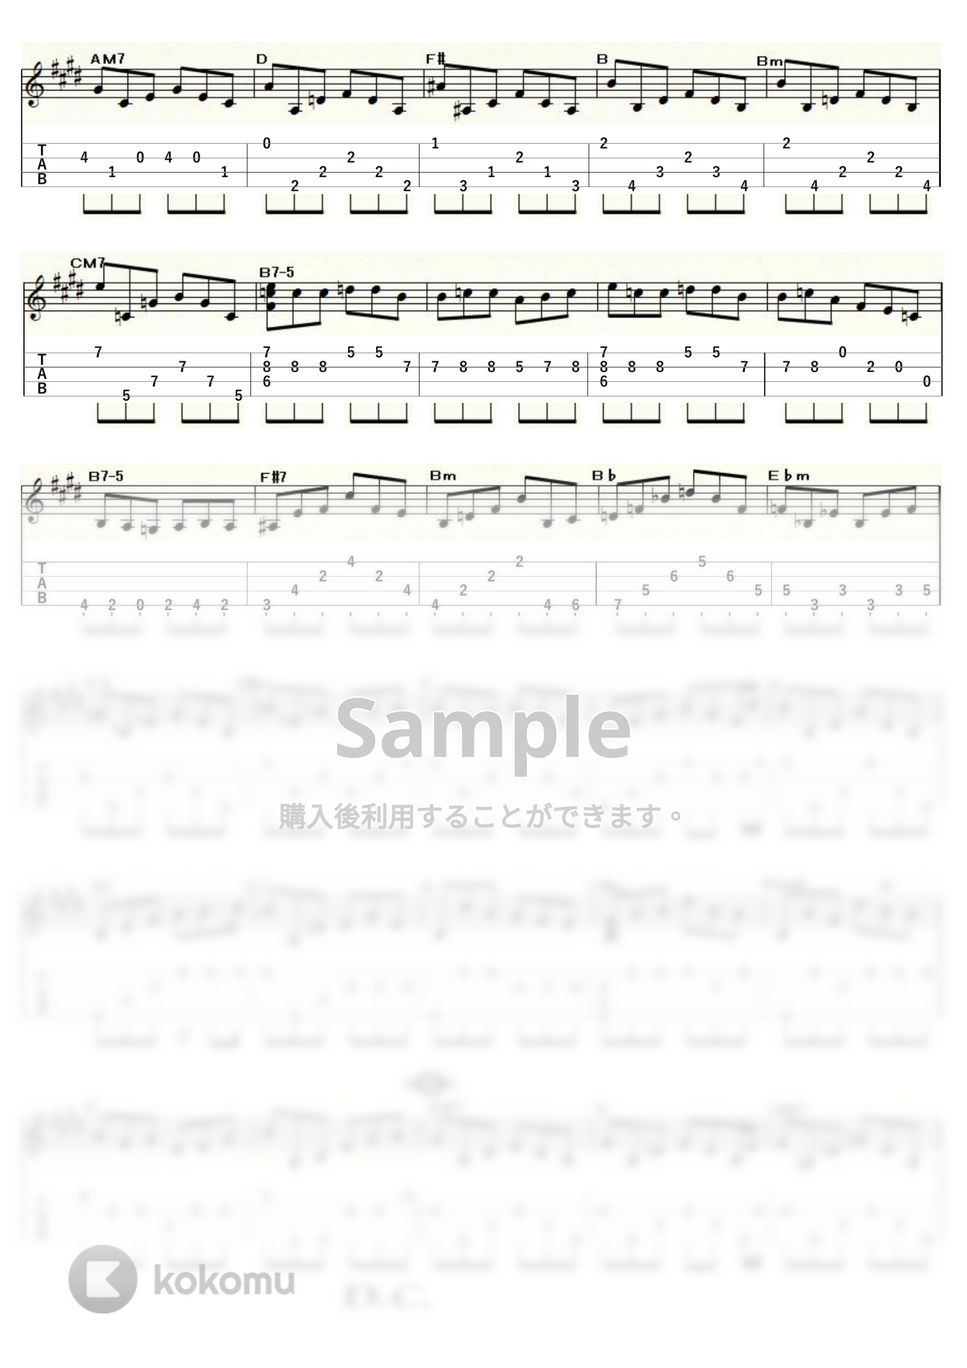 映画「ディア・ハンター」 - カヴァティーナ (ｳｸﾚﾚｿﾛ / Low-G / 中級) by ukulelepapa